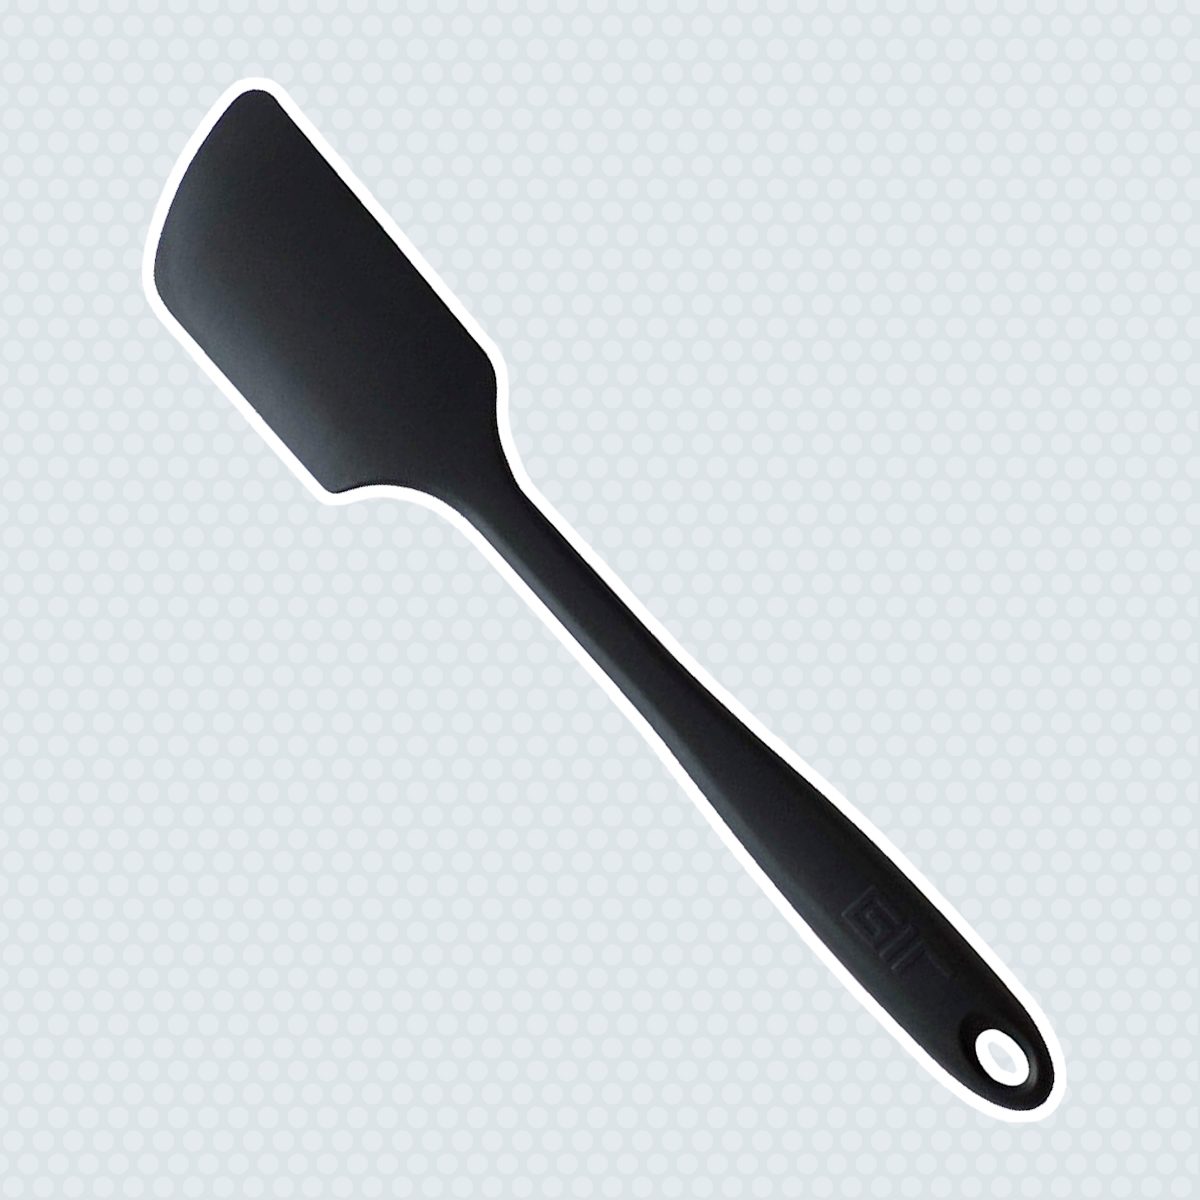 Stir 8 Stainless Steel Cookie Scoop 4oz - Decorating Spatulas & Utensils - Baking & Kitchen